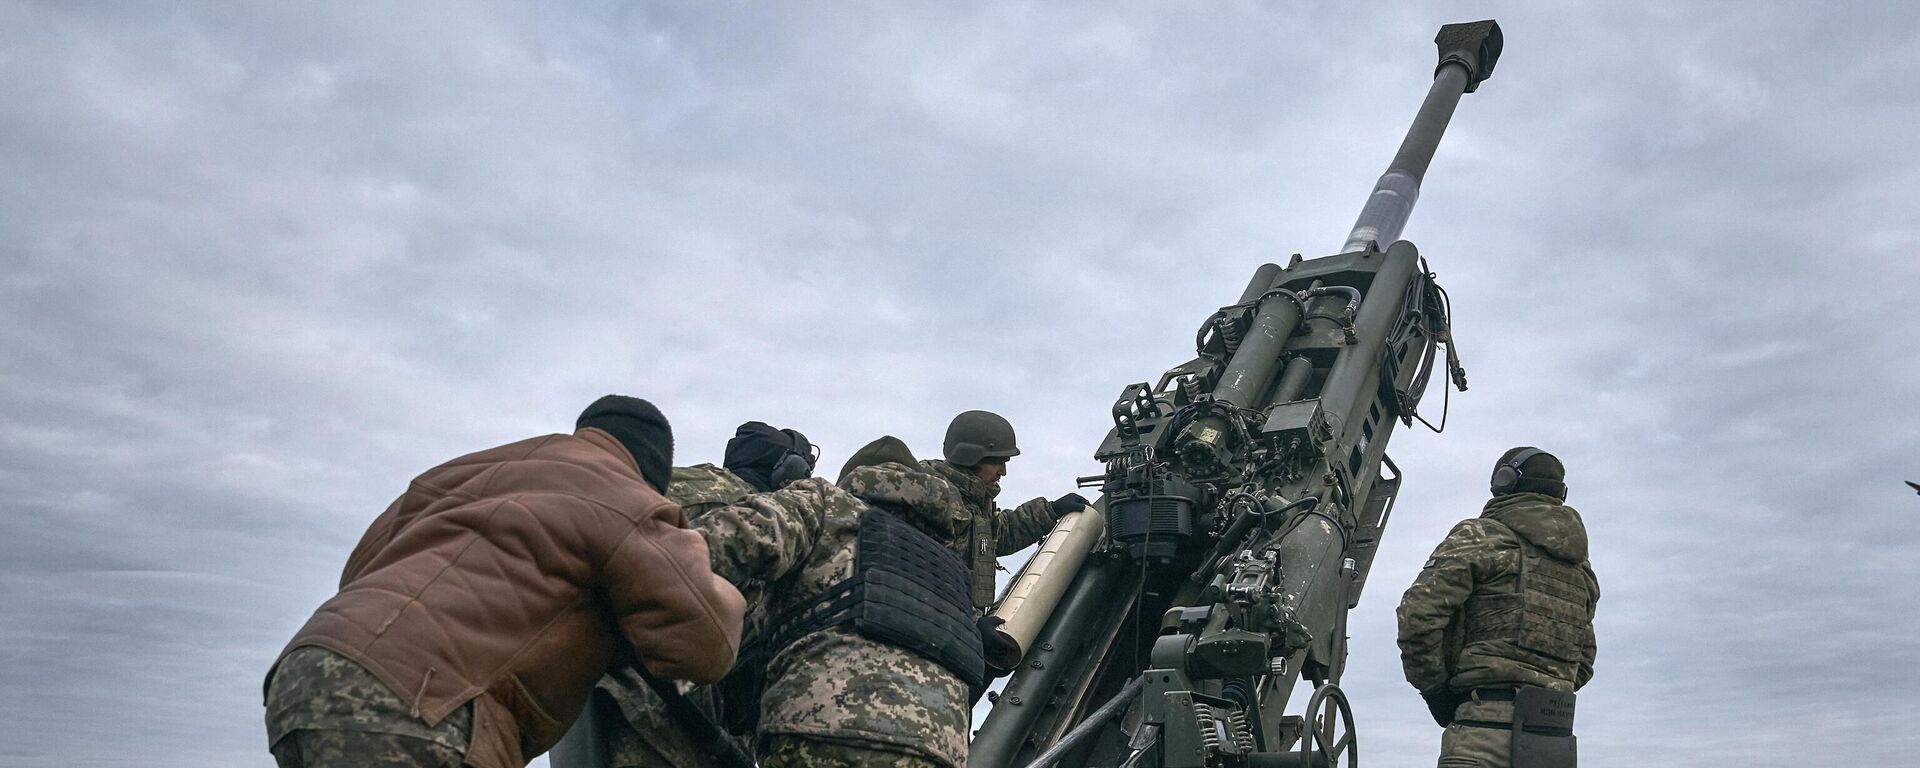 Militares ucranianos operan un sistema de artillería estadounidense M777 en la región de Jersón el 9 de enero de 2023 - Sputnik Mundo, 1920, 26.05.2023